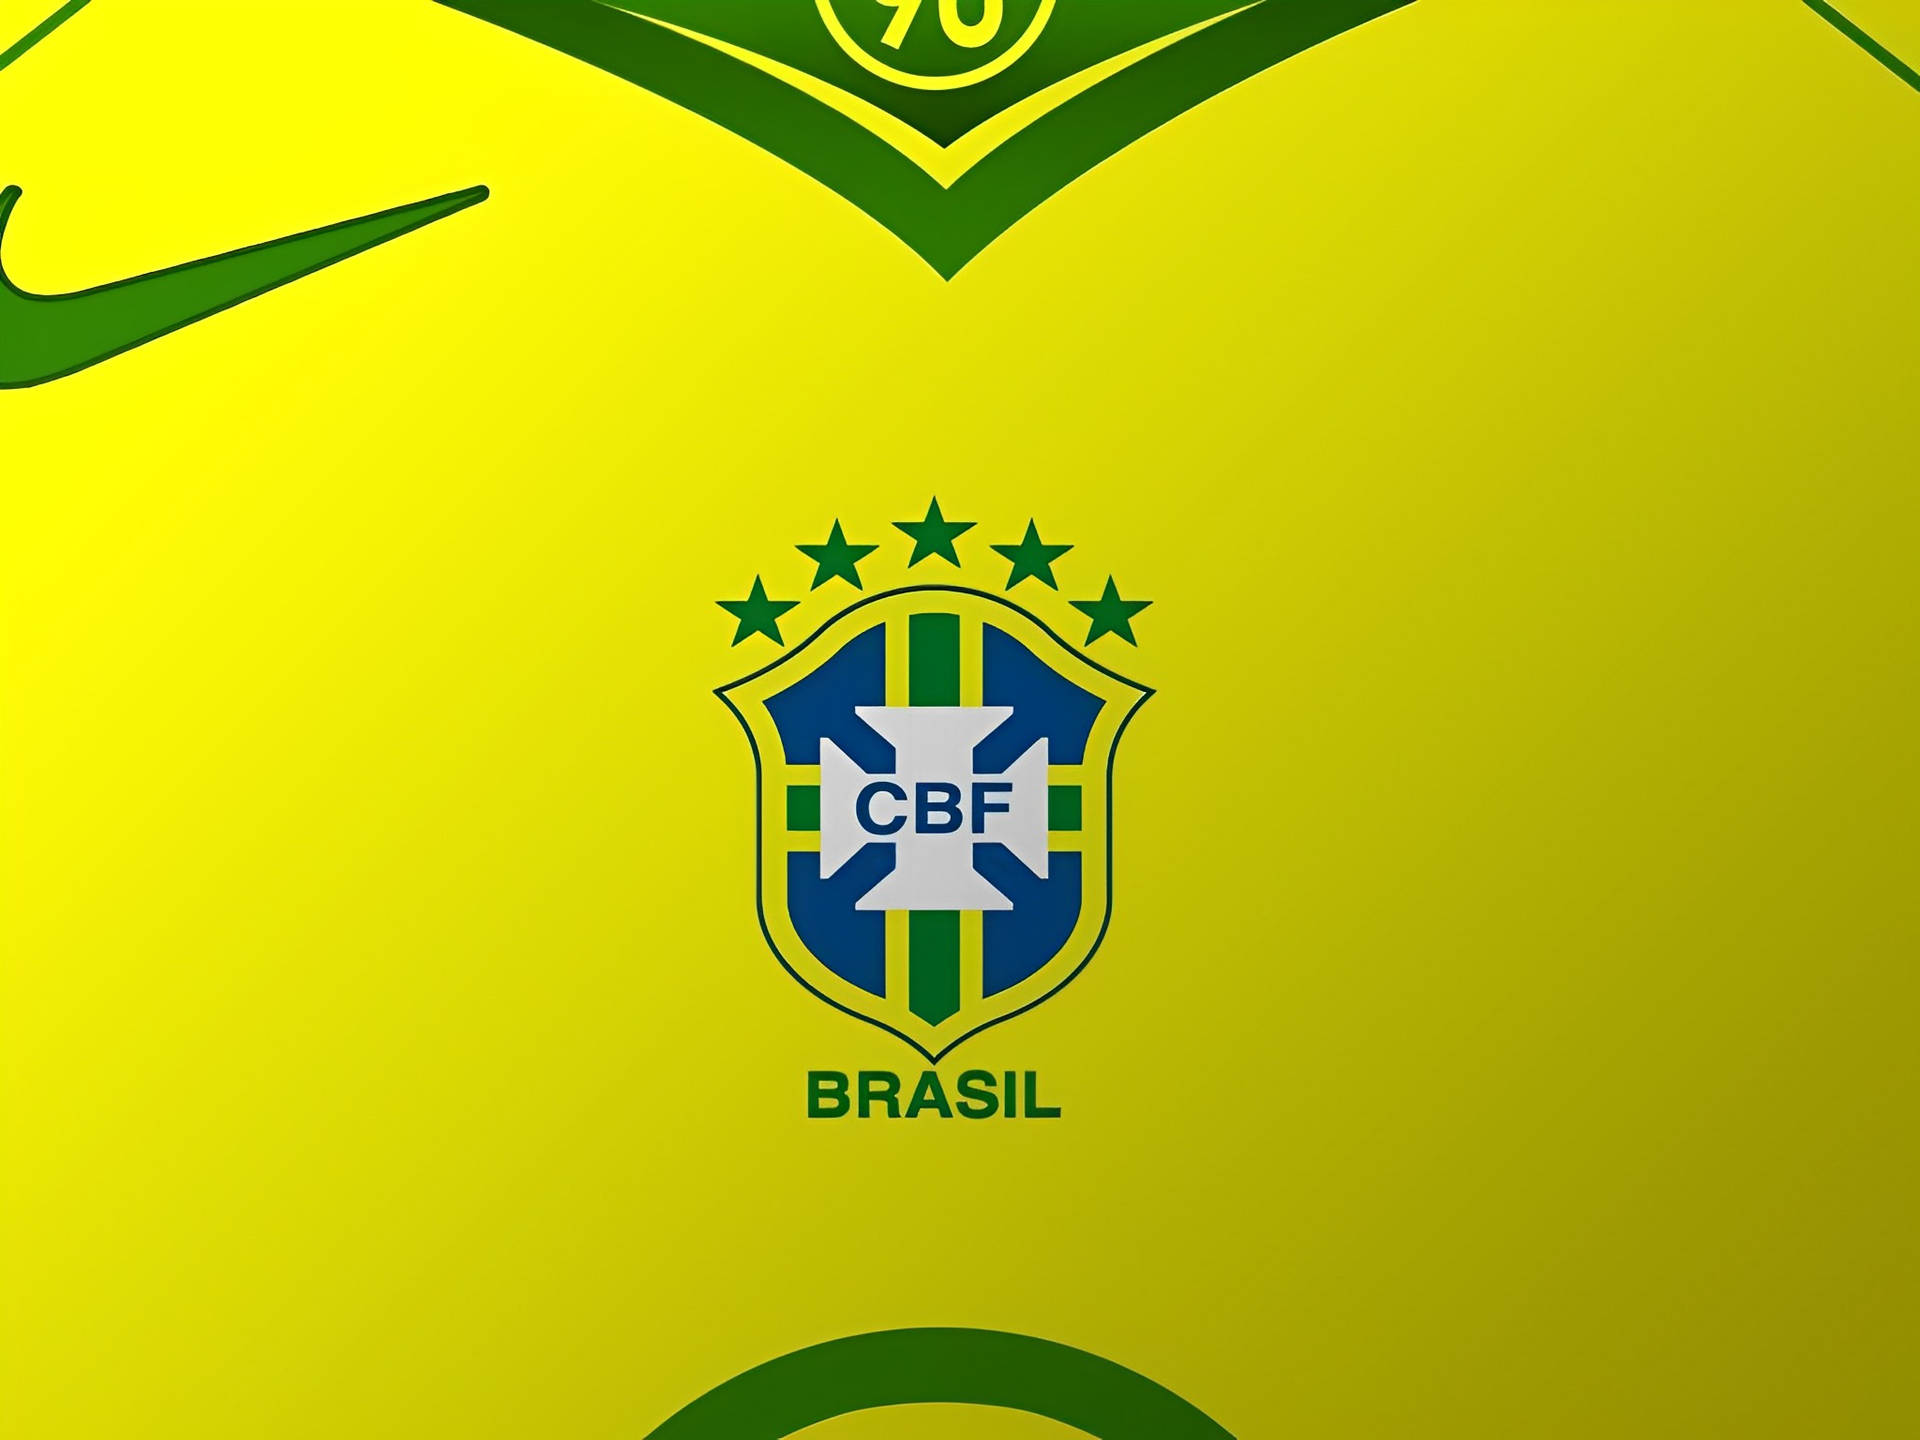 Brasilienslandslag I Fotboll Cbf-logotypen. Wallpaper